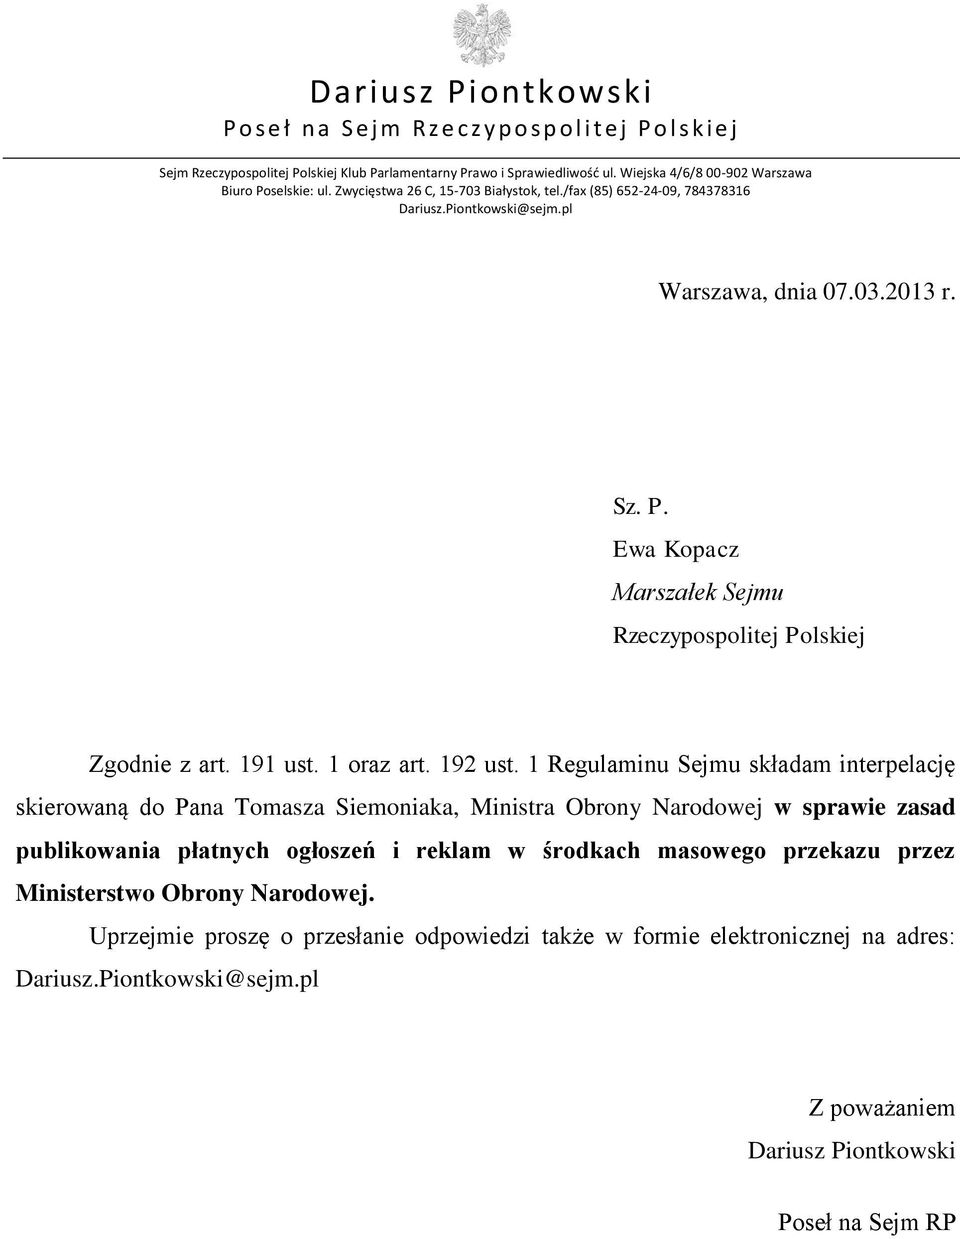 1 Regulaminu Sejmu składam interpelację skierowaną do Pana Tomasza Siemoniaka, Ministra Obrony Narodowej w sprawie zasad